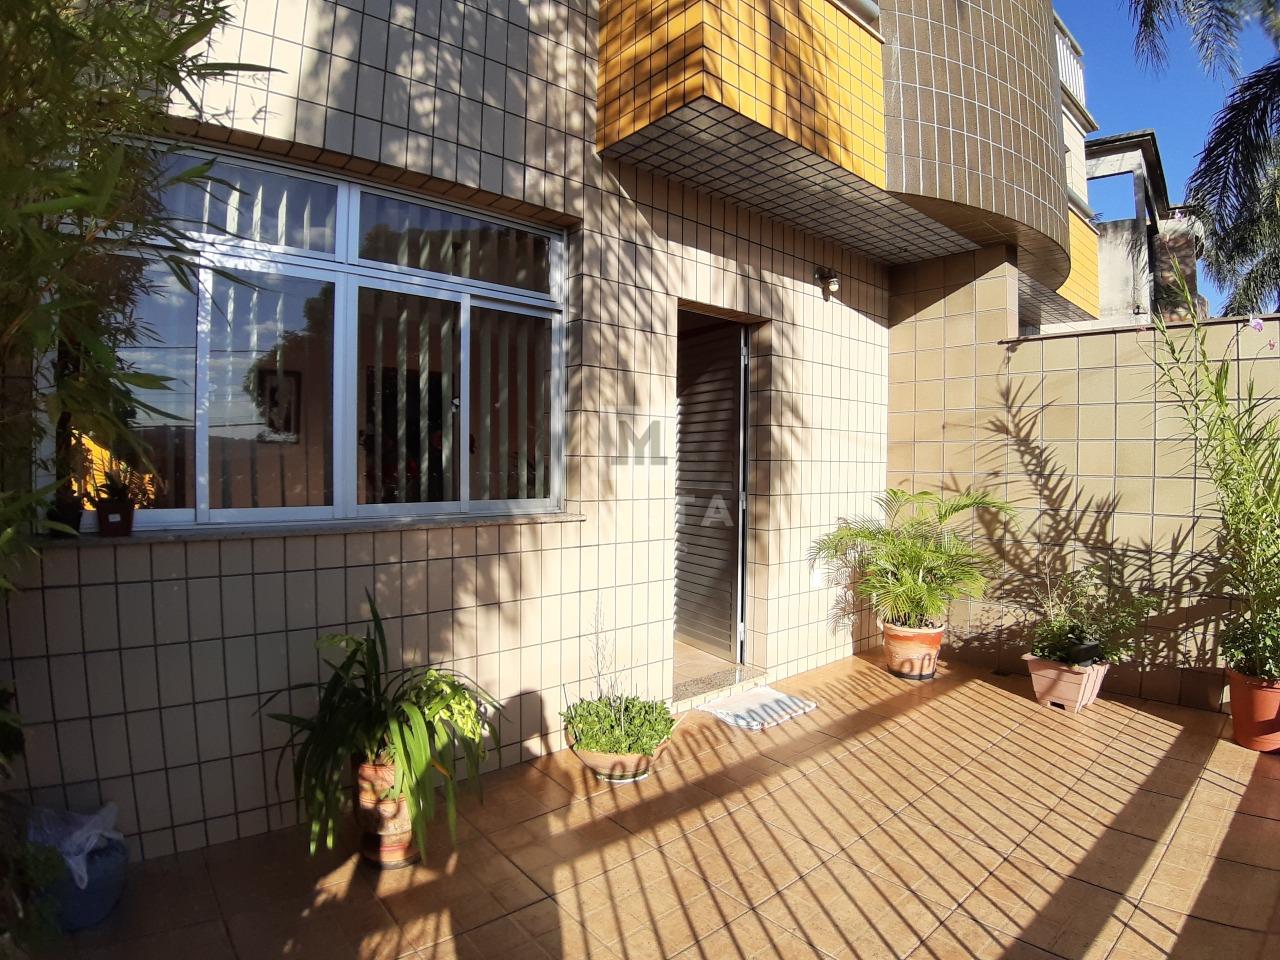 Casa Geminada à venda no bairro Flávio marques lisboa de 3 quartos: 